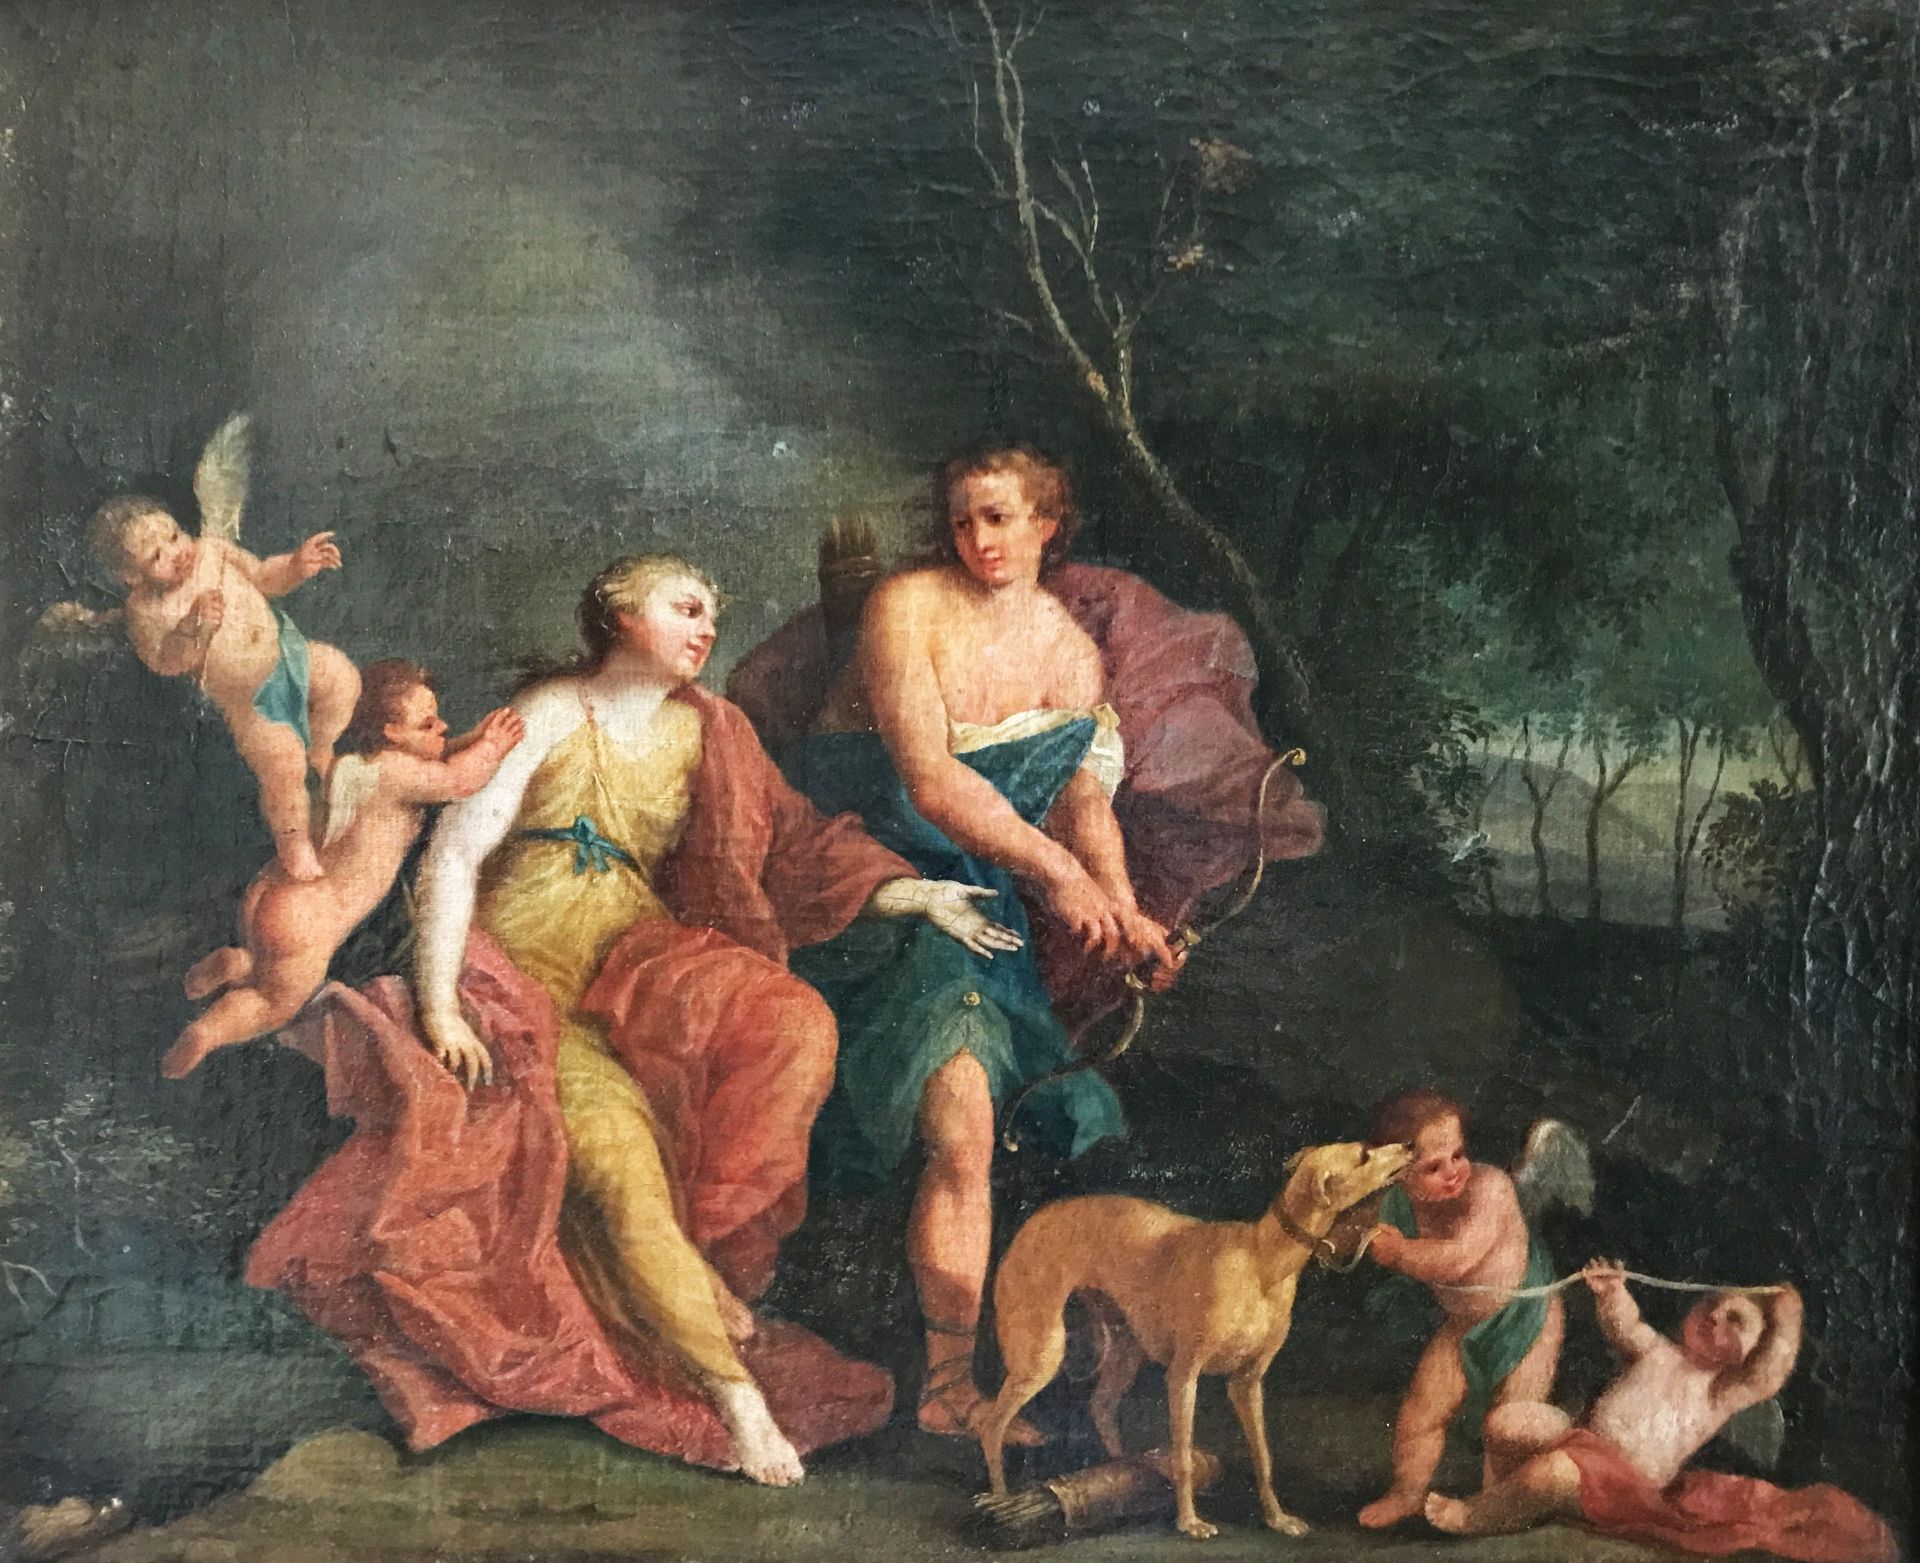 Unbekannter Künstler, Italien 17. Jh., Jagdgöttin Diana mit weiteren Figuren, Putten und Hund, Öl/